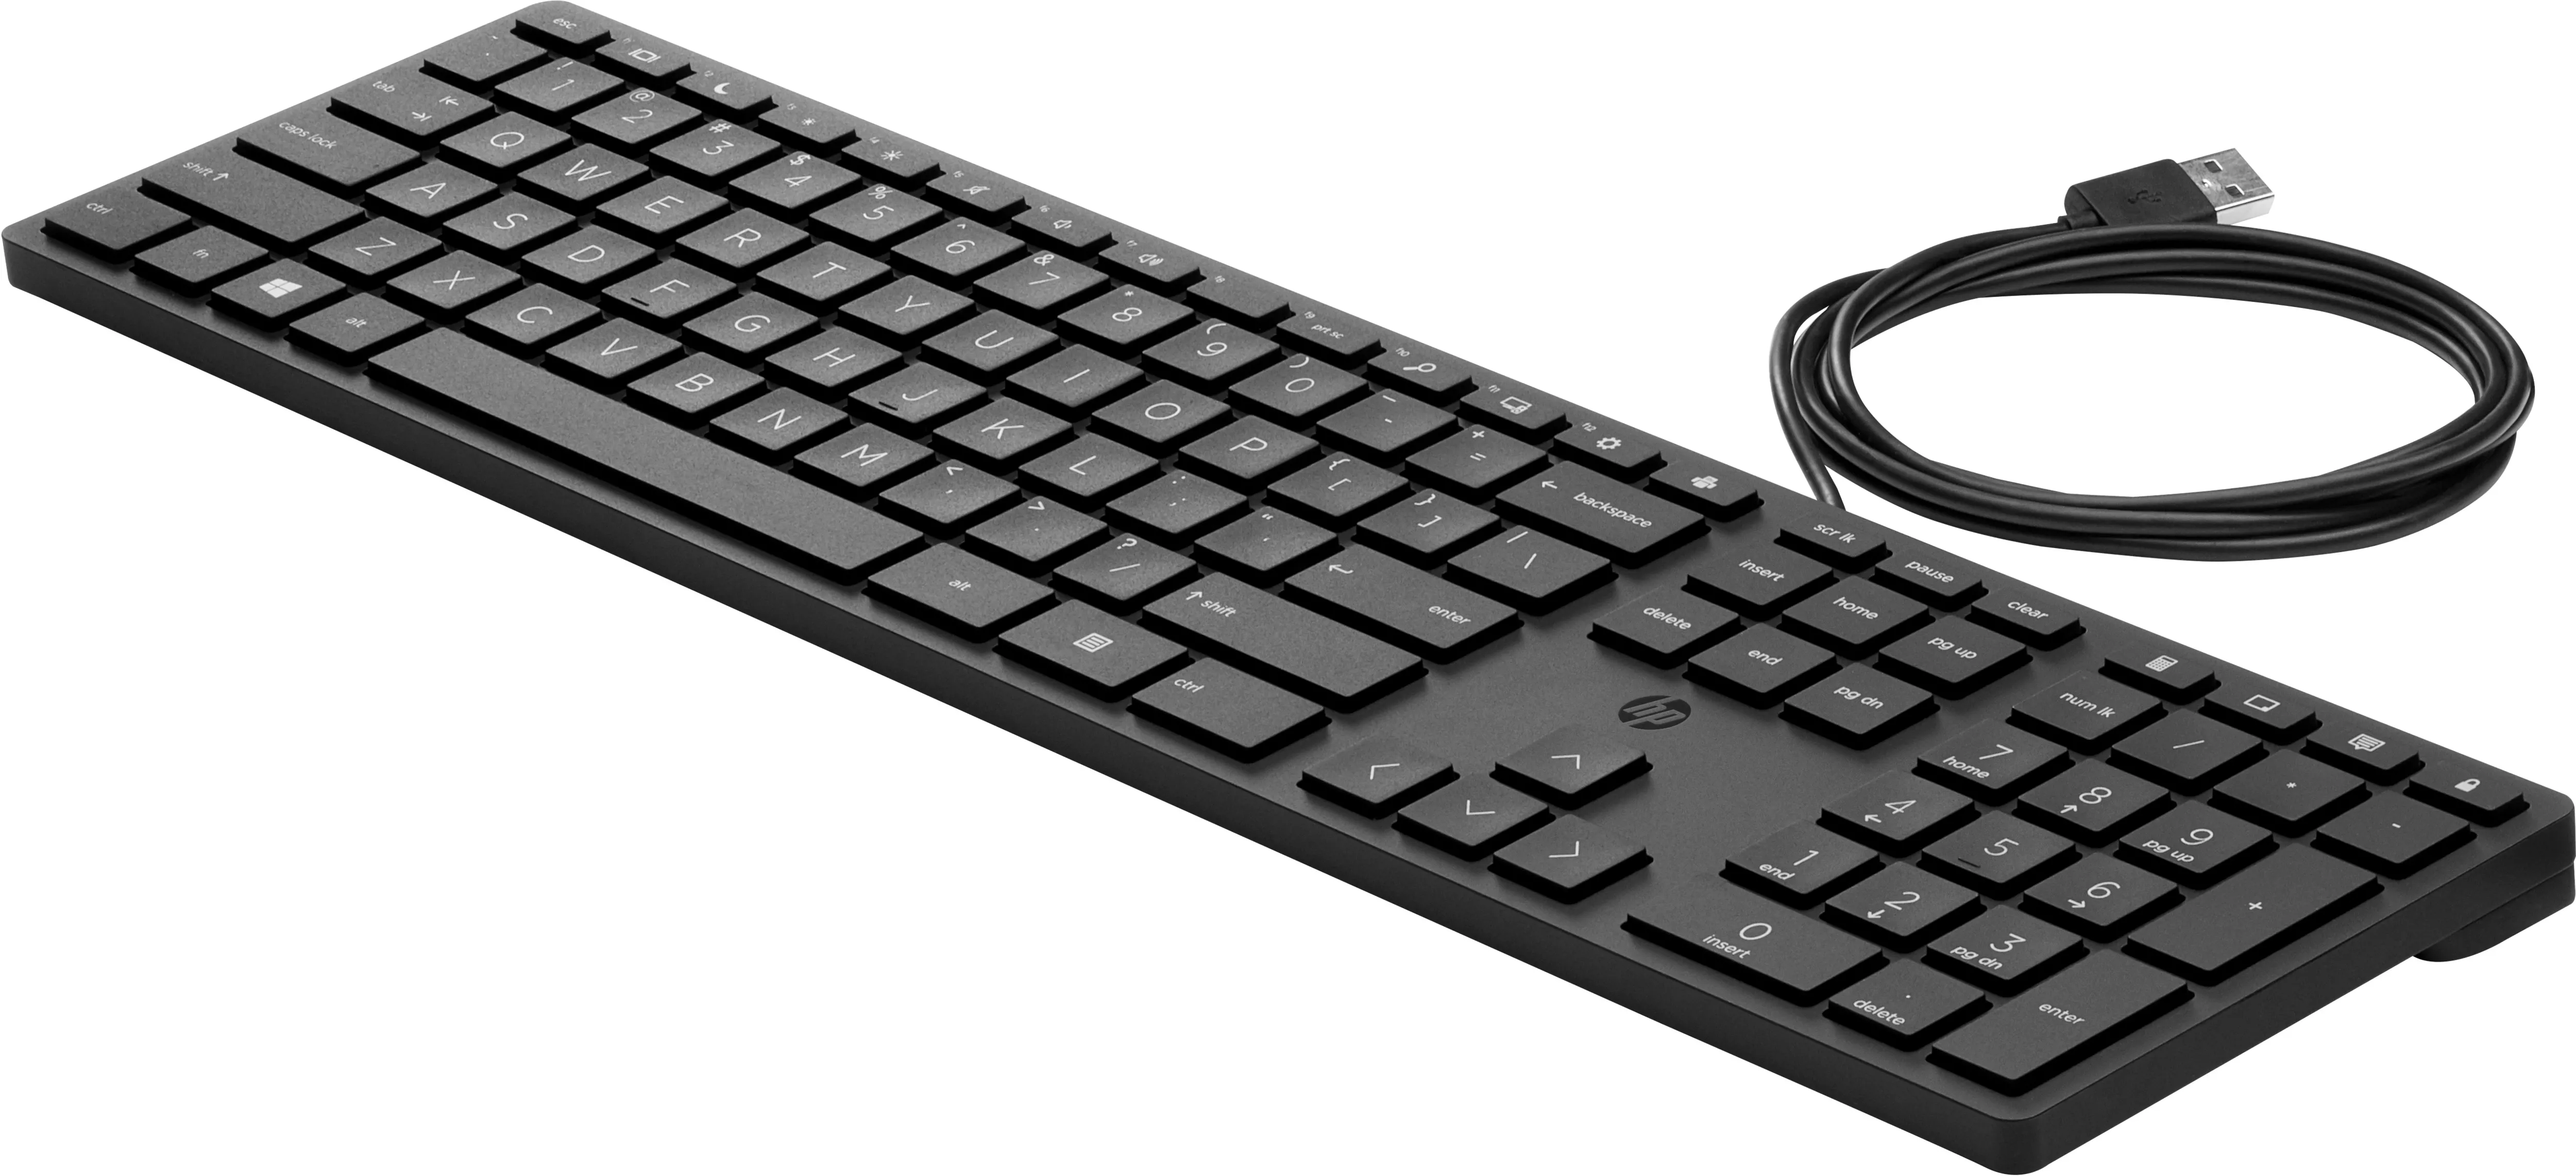 Revendeur officiel Clavier HP Wired Desktop 320K Keyboard (PT)